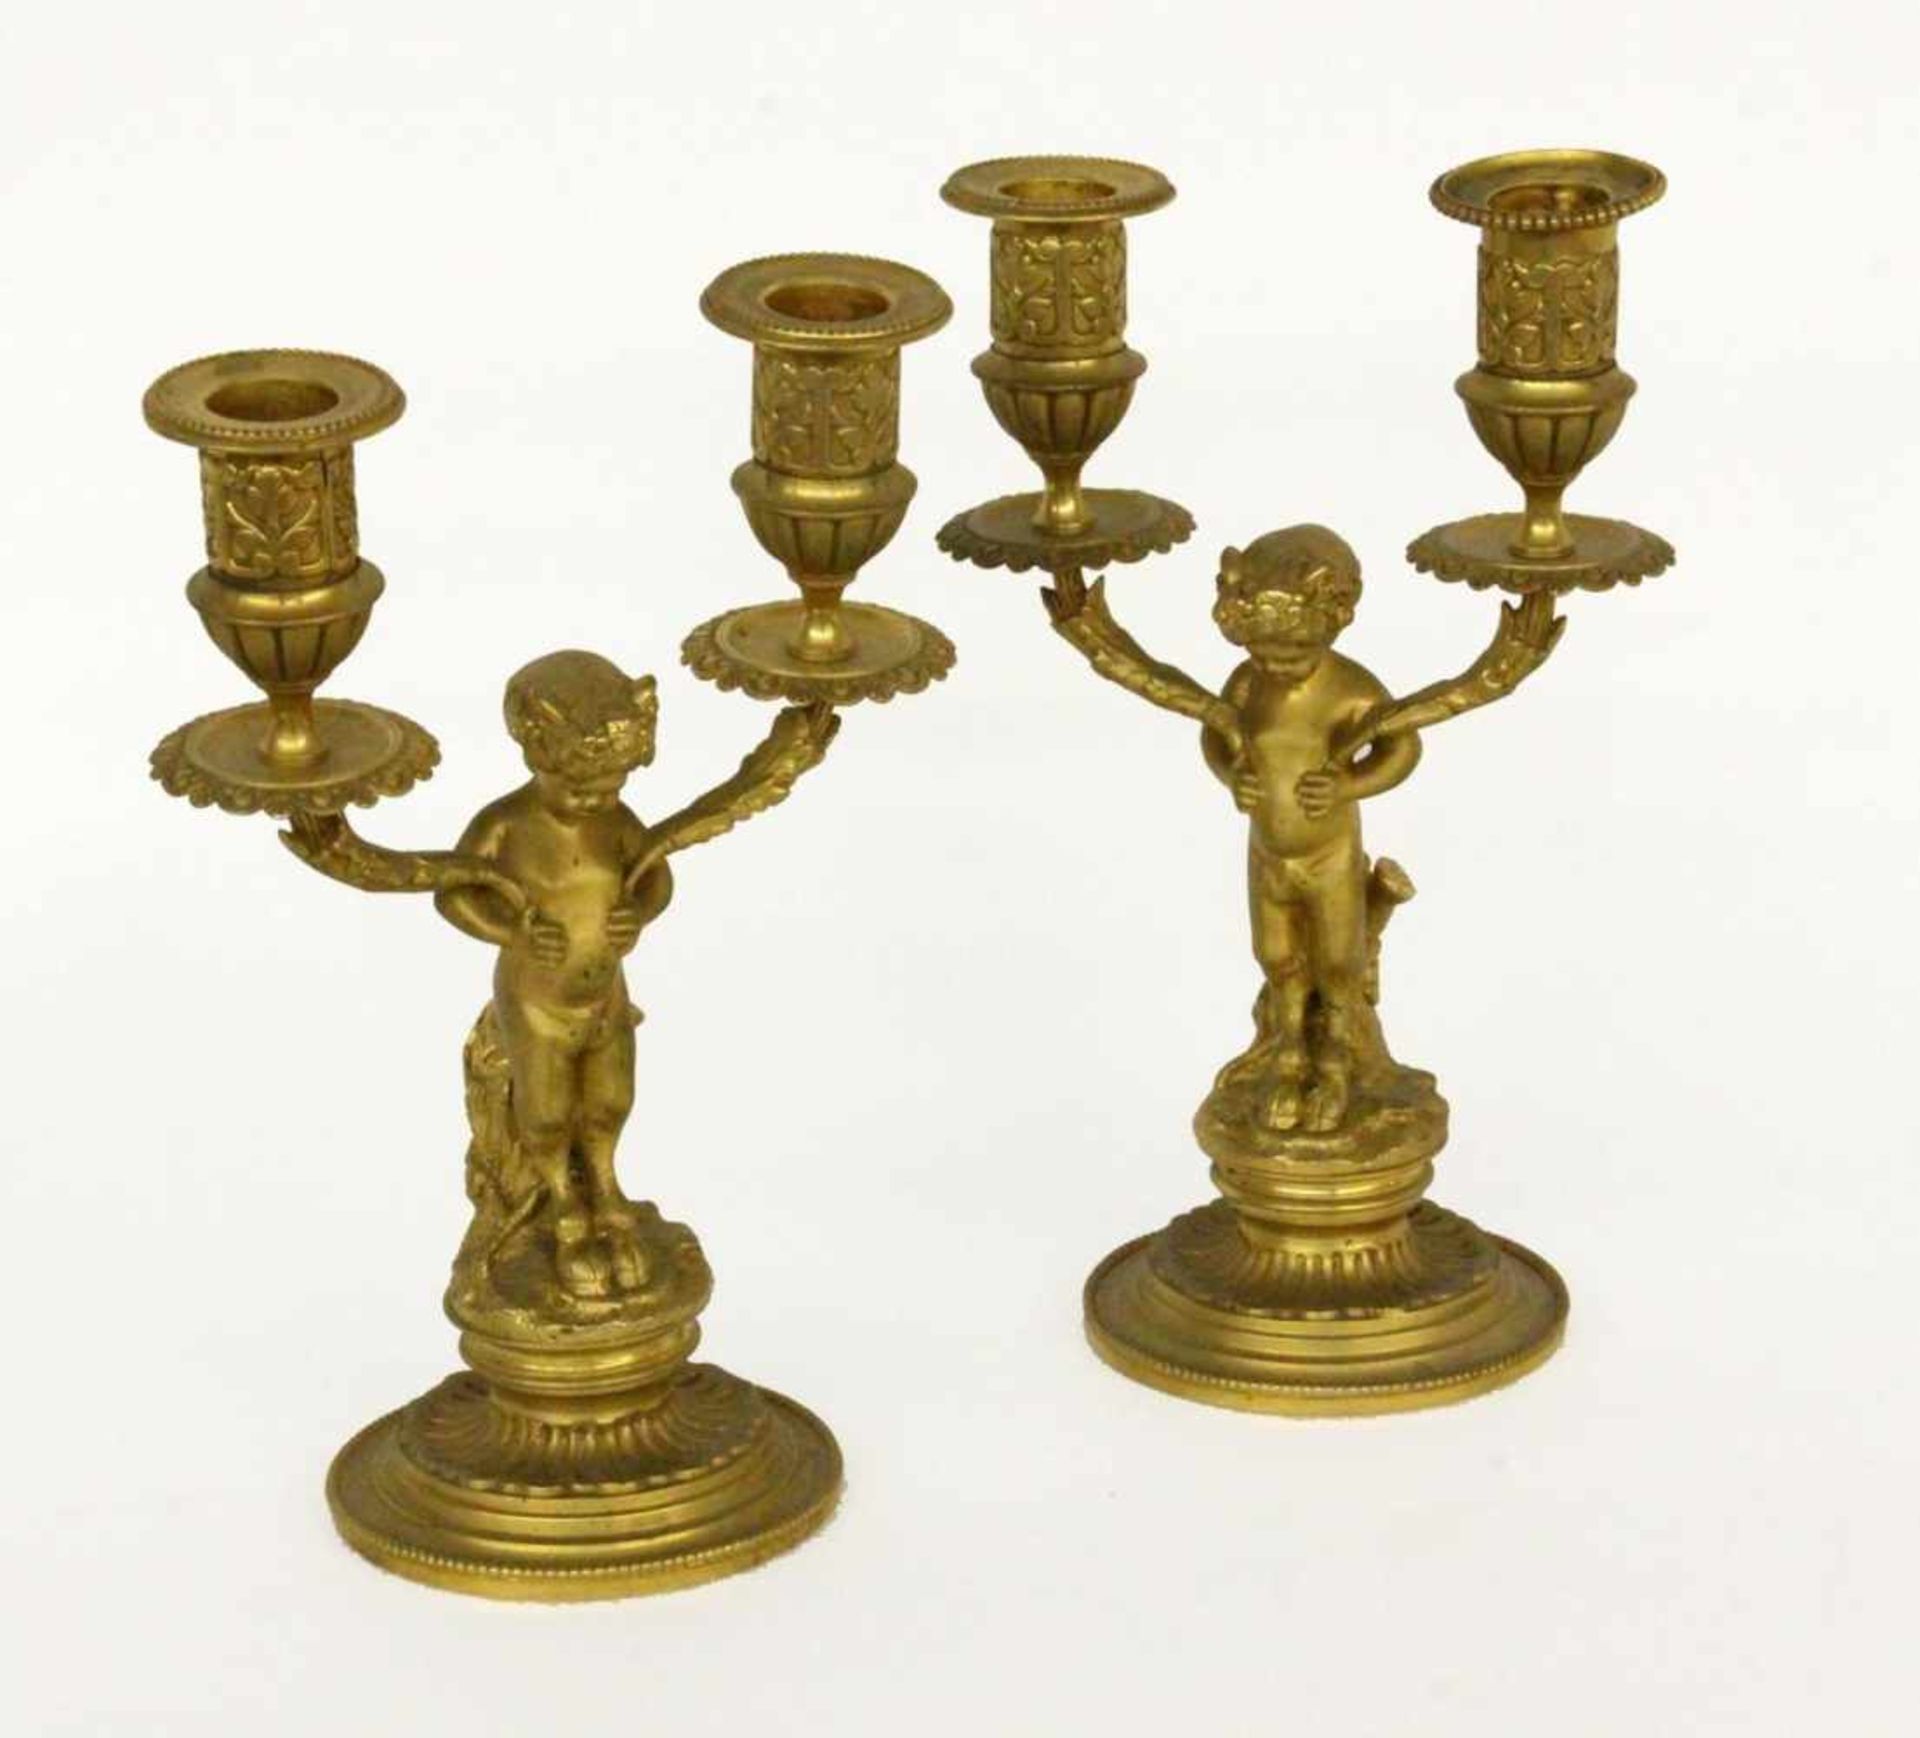 PAAR KERZENHALTER MIT FAUNENFrankreich, 19.Jh. 2-flammiges Leuchterpaar aus vergoldeter Bronze.